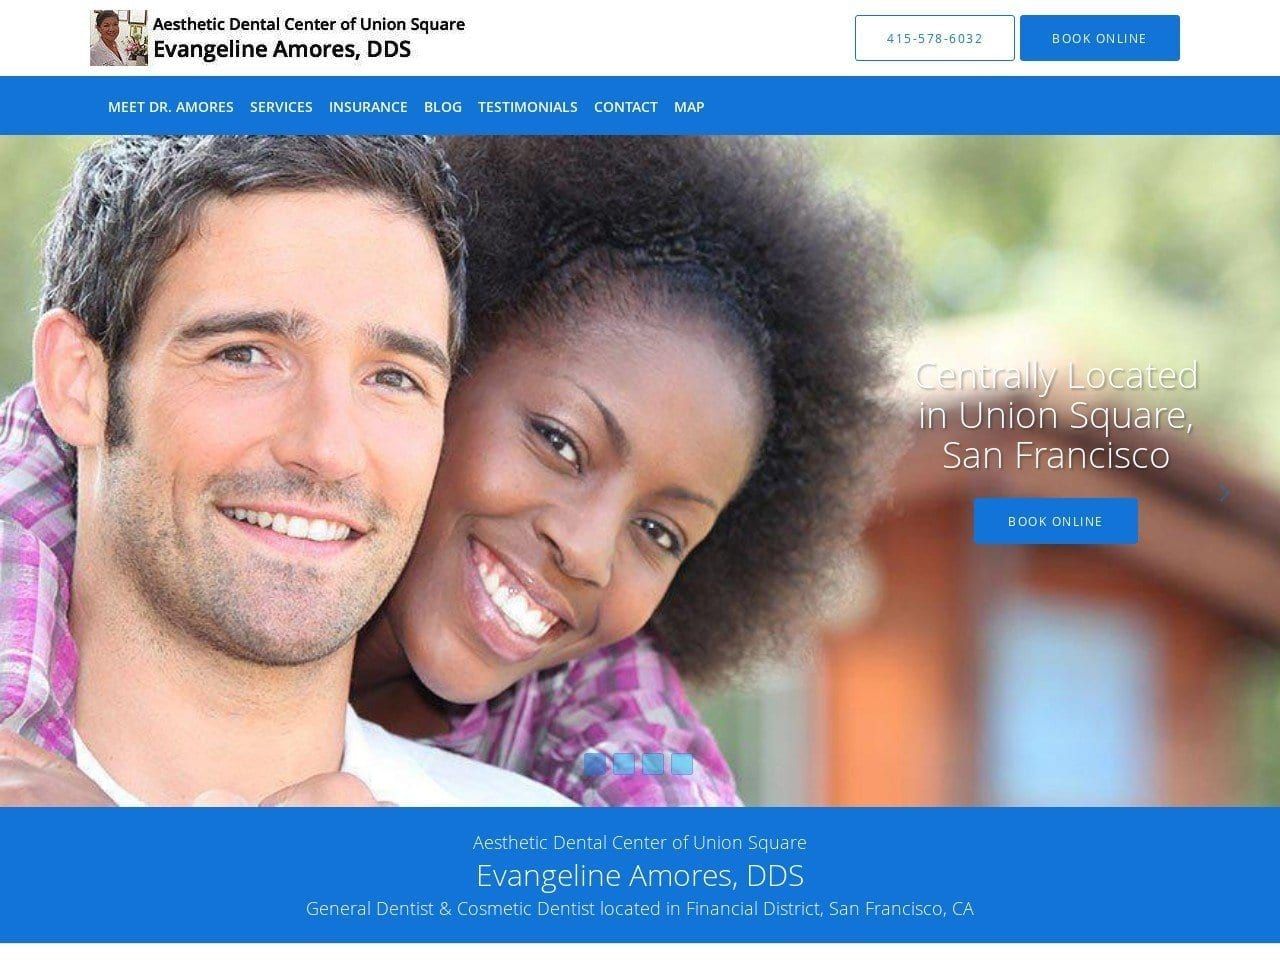 Aesthetic Dental Center of Union Square Website Screenshot from dramores.com